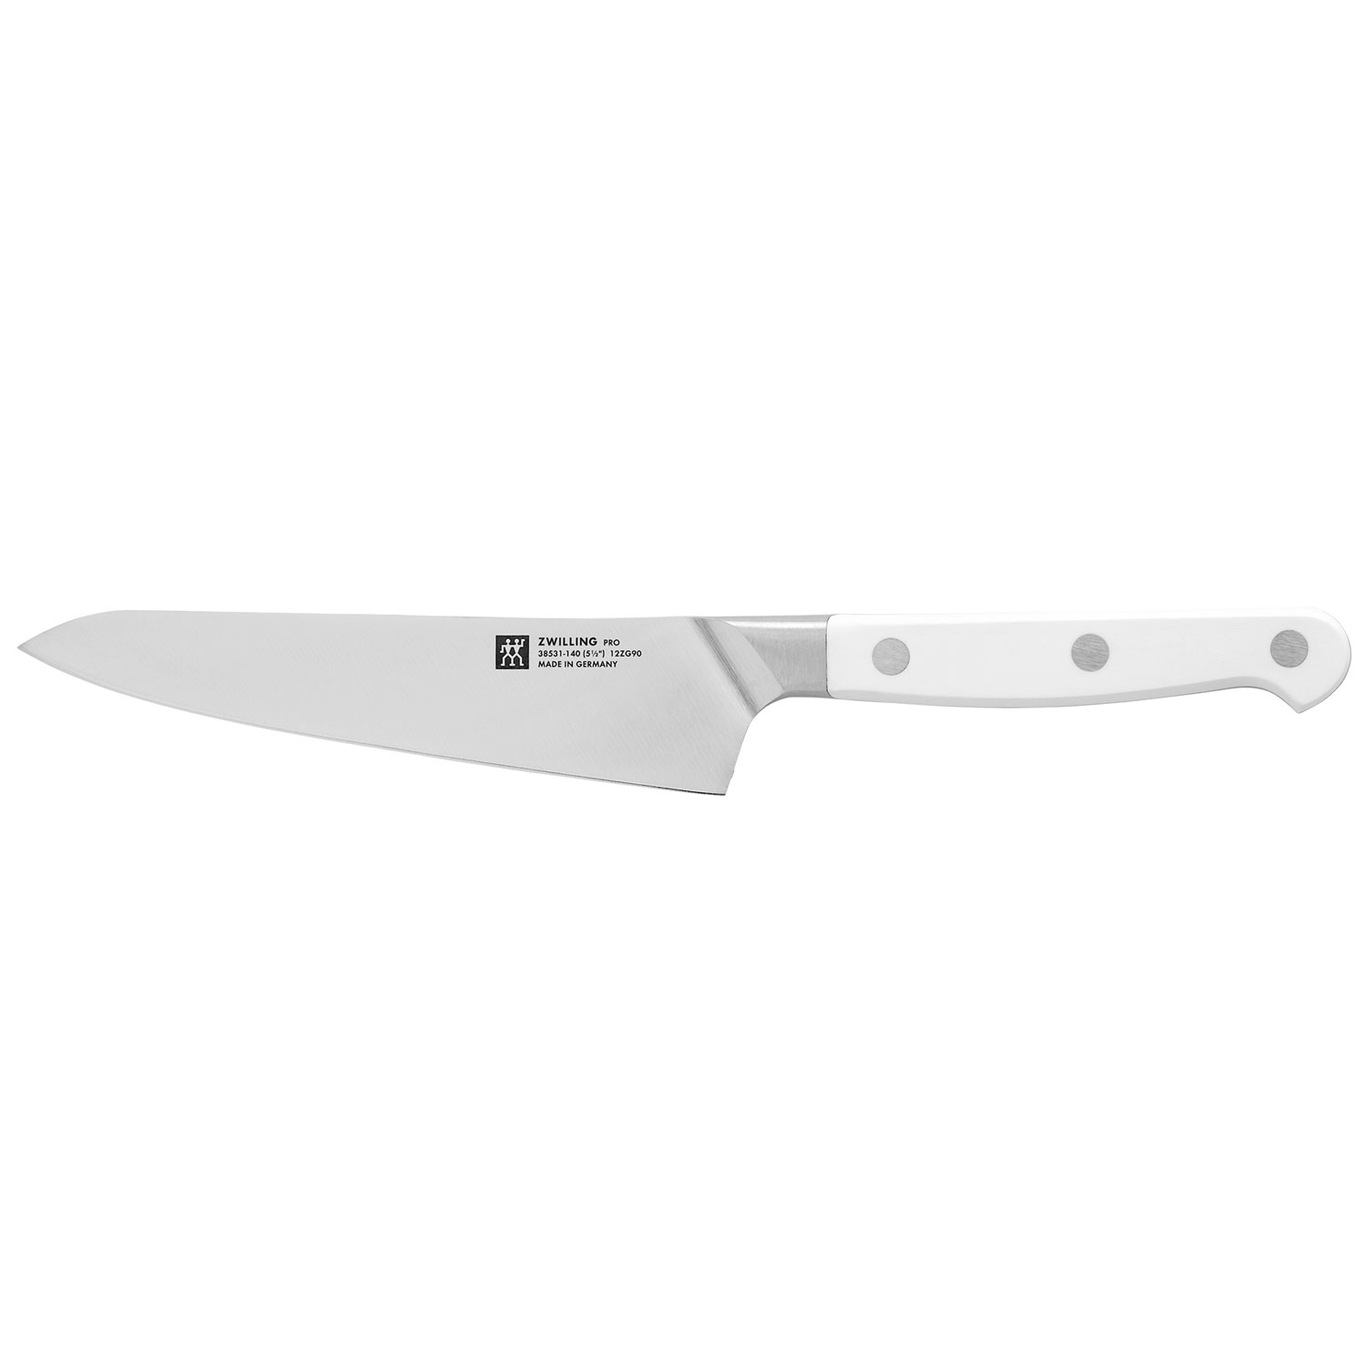 Pro Le Blanc Kompakt Kockkniv, 14 cm